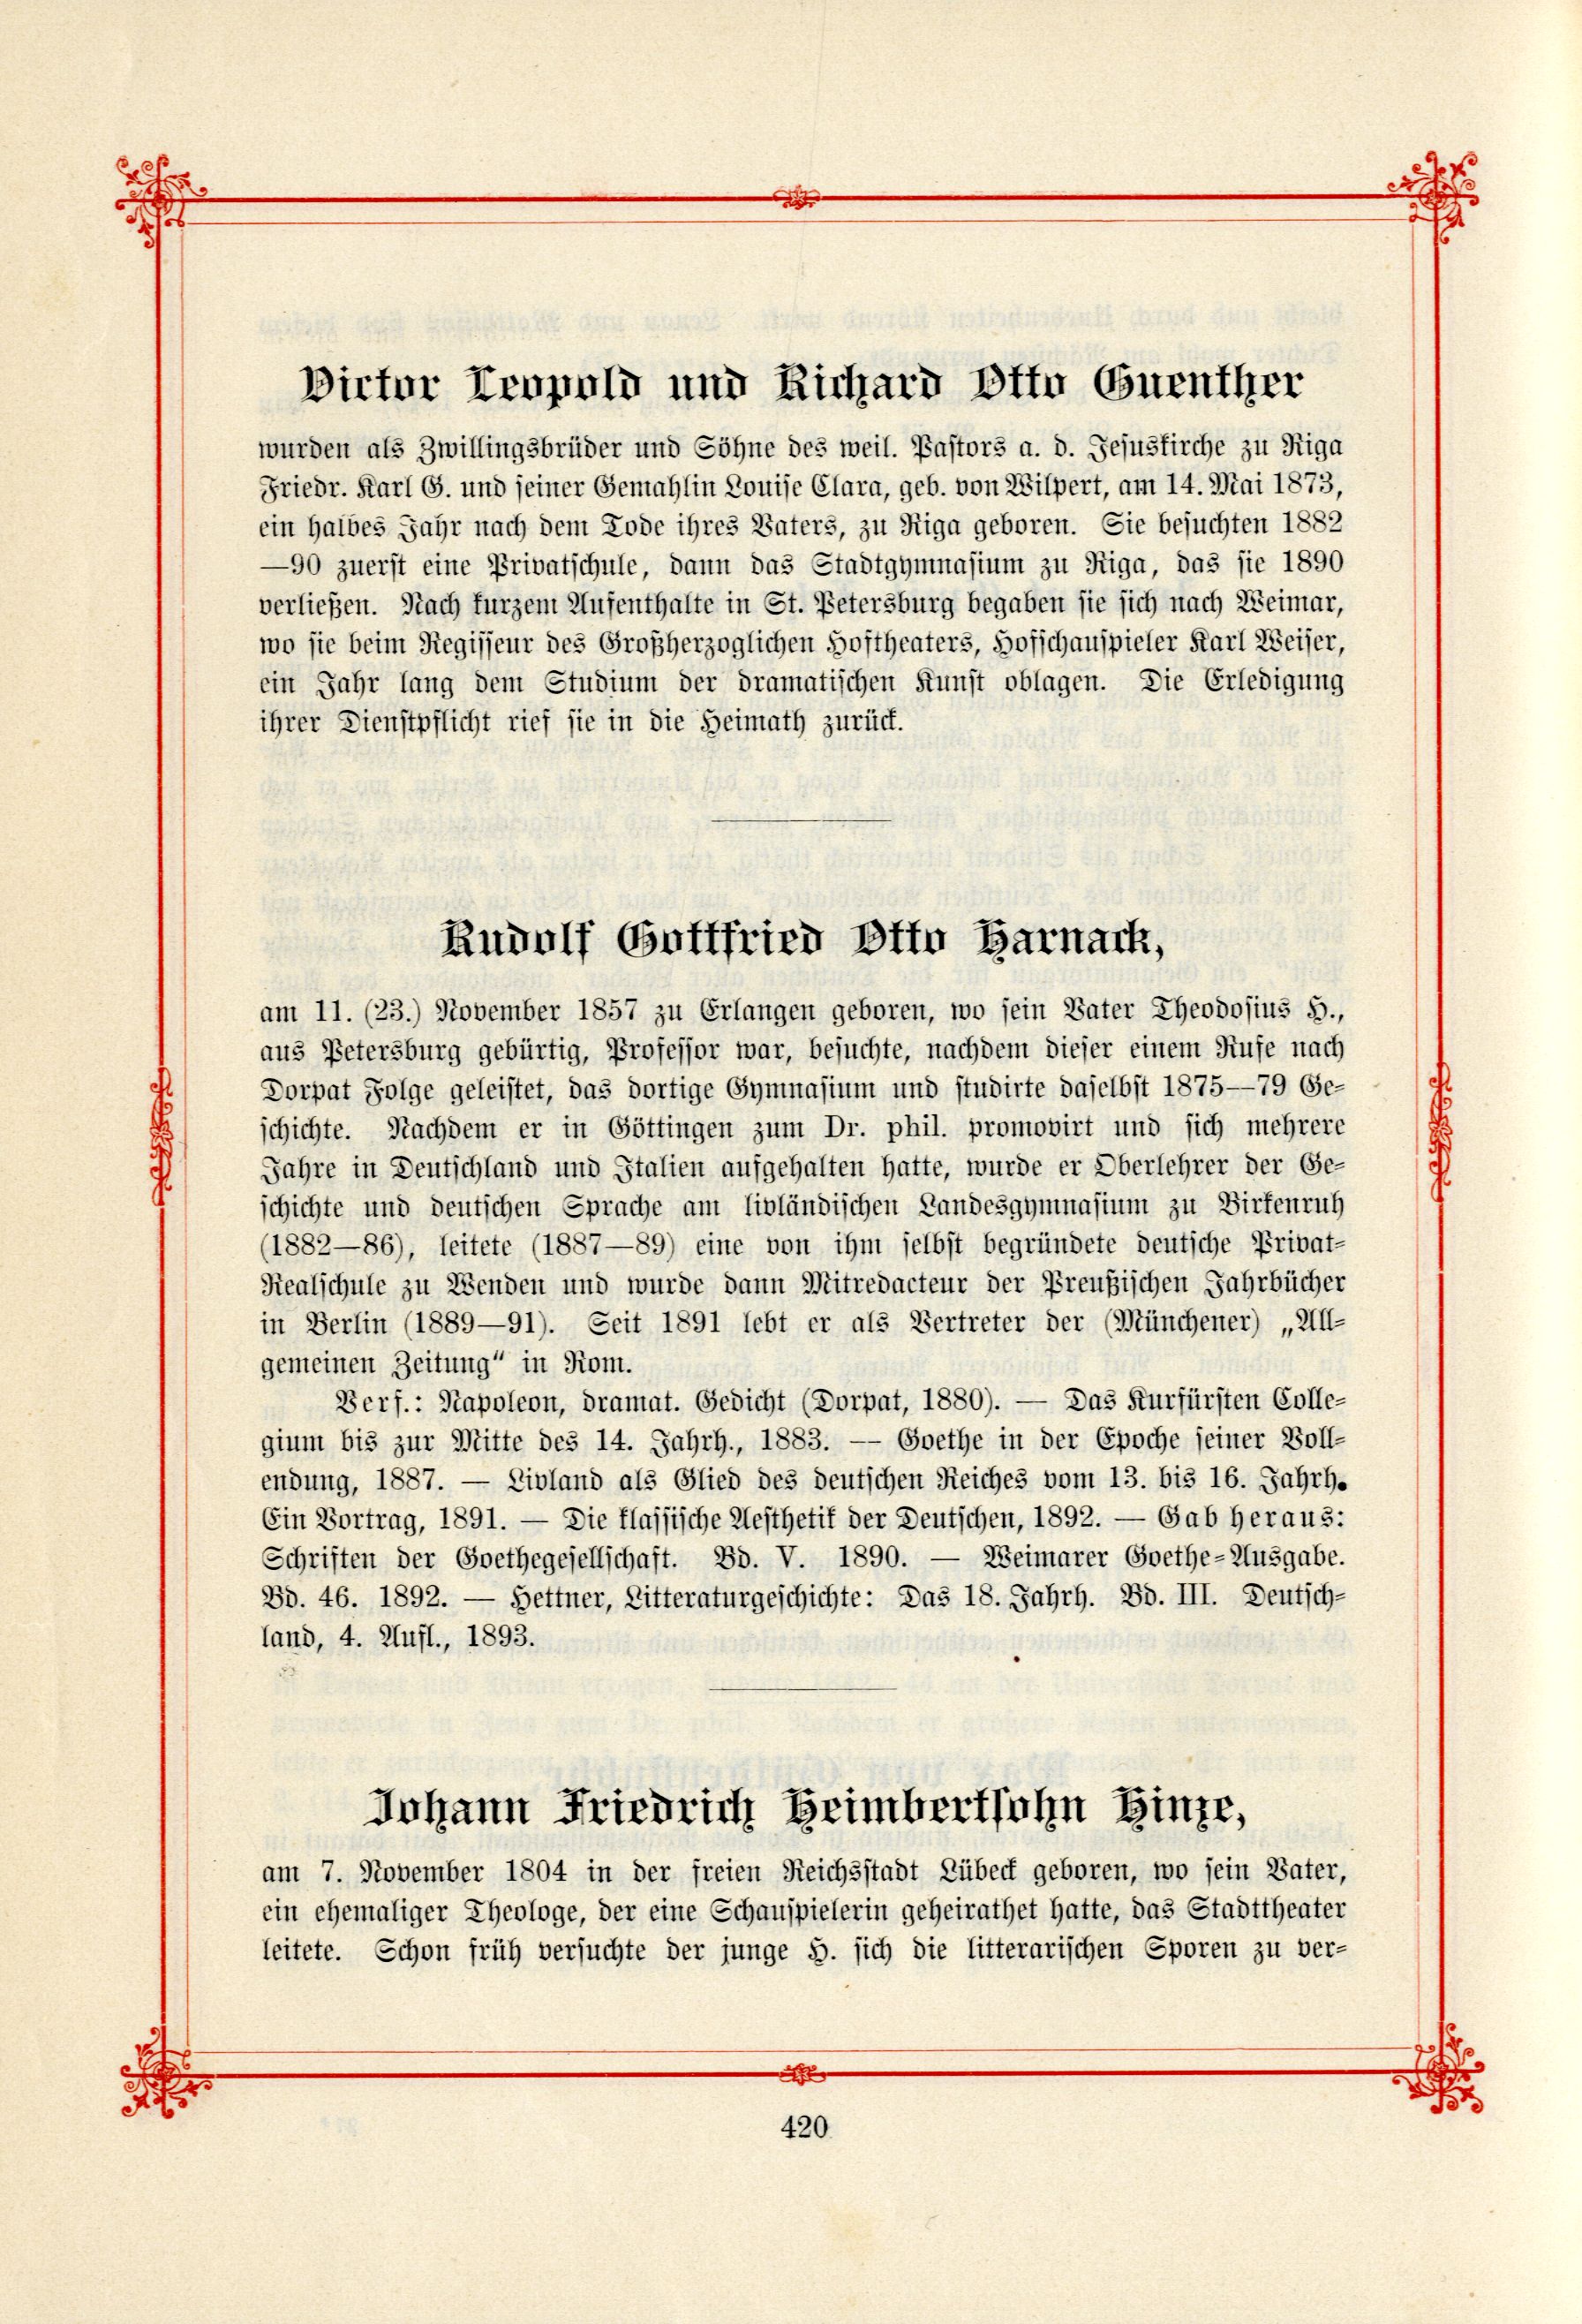 Das Baltische Dichterbuch (1895) | 466. (420) Main body of text